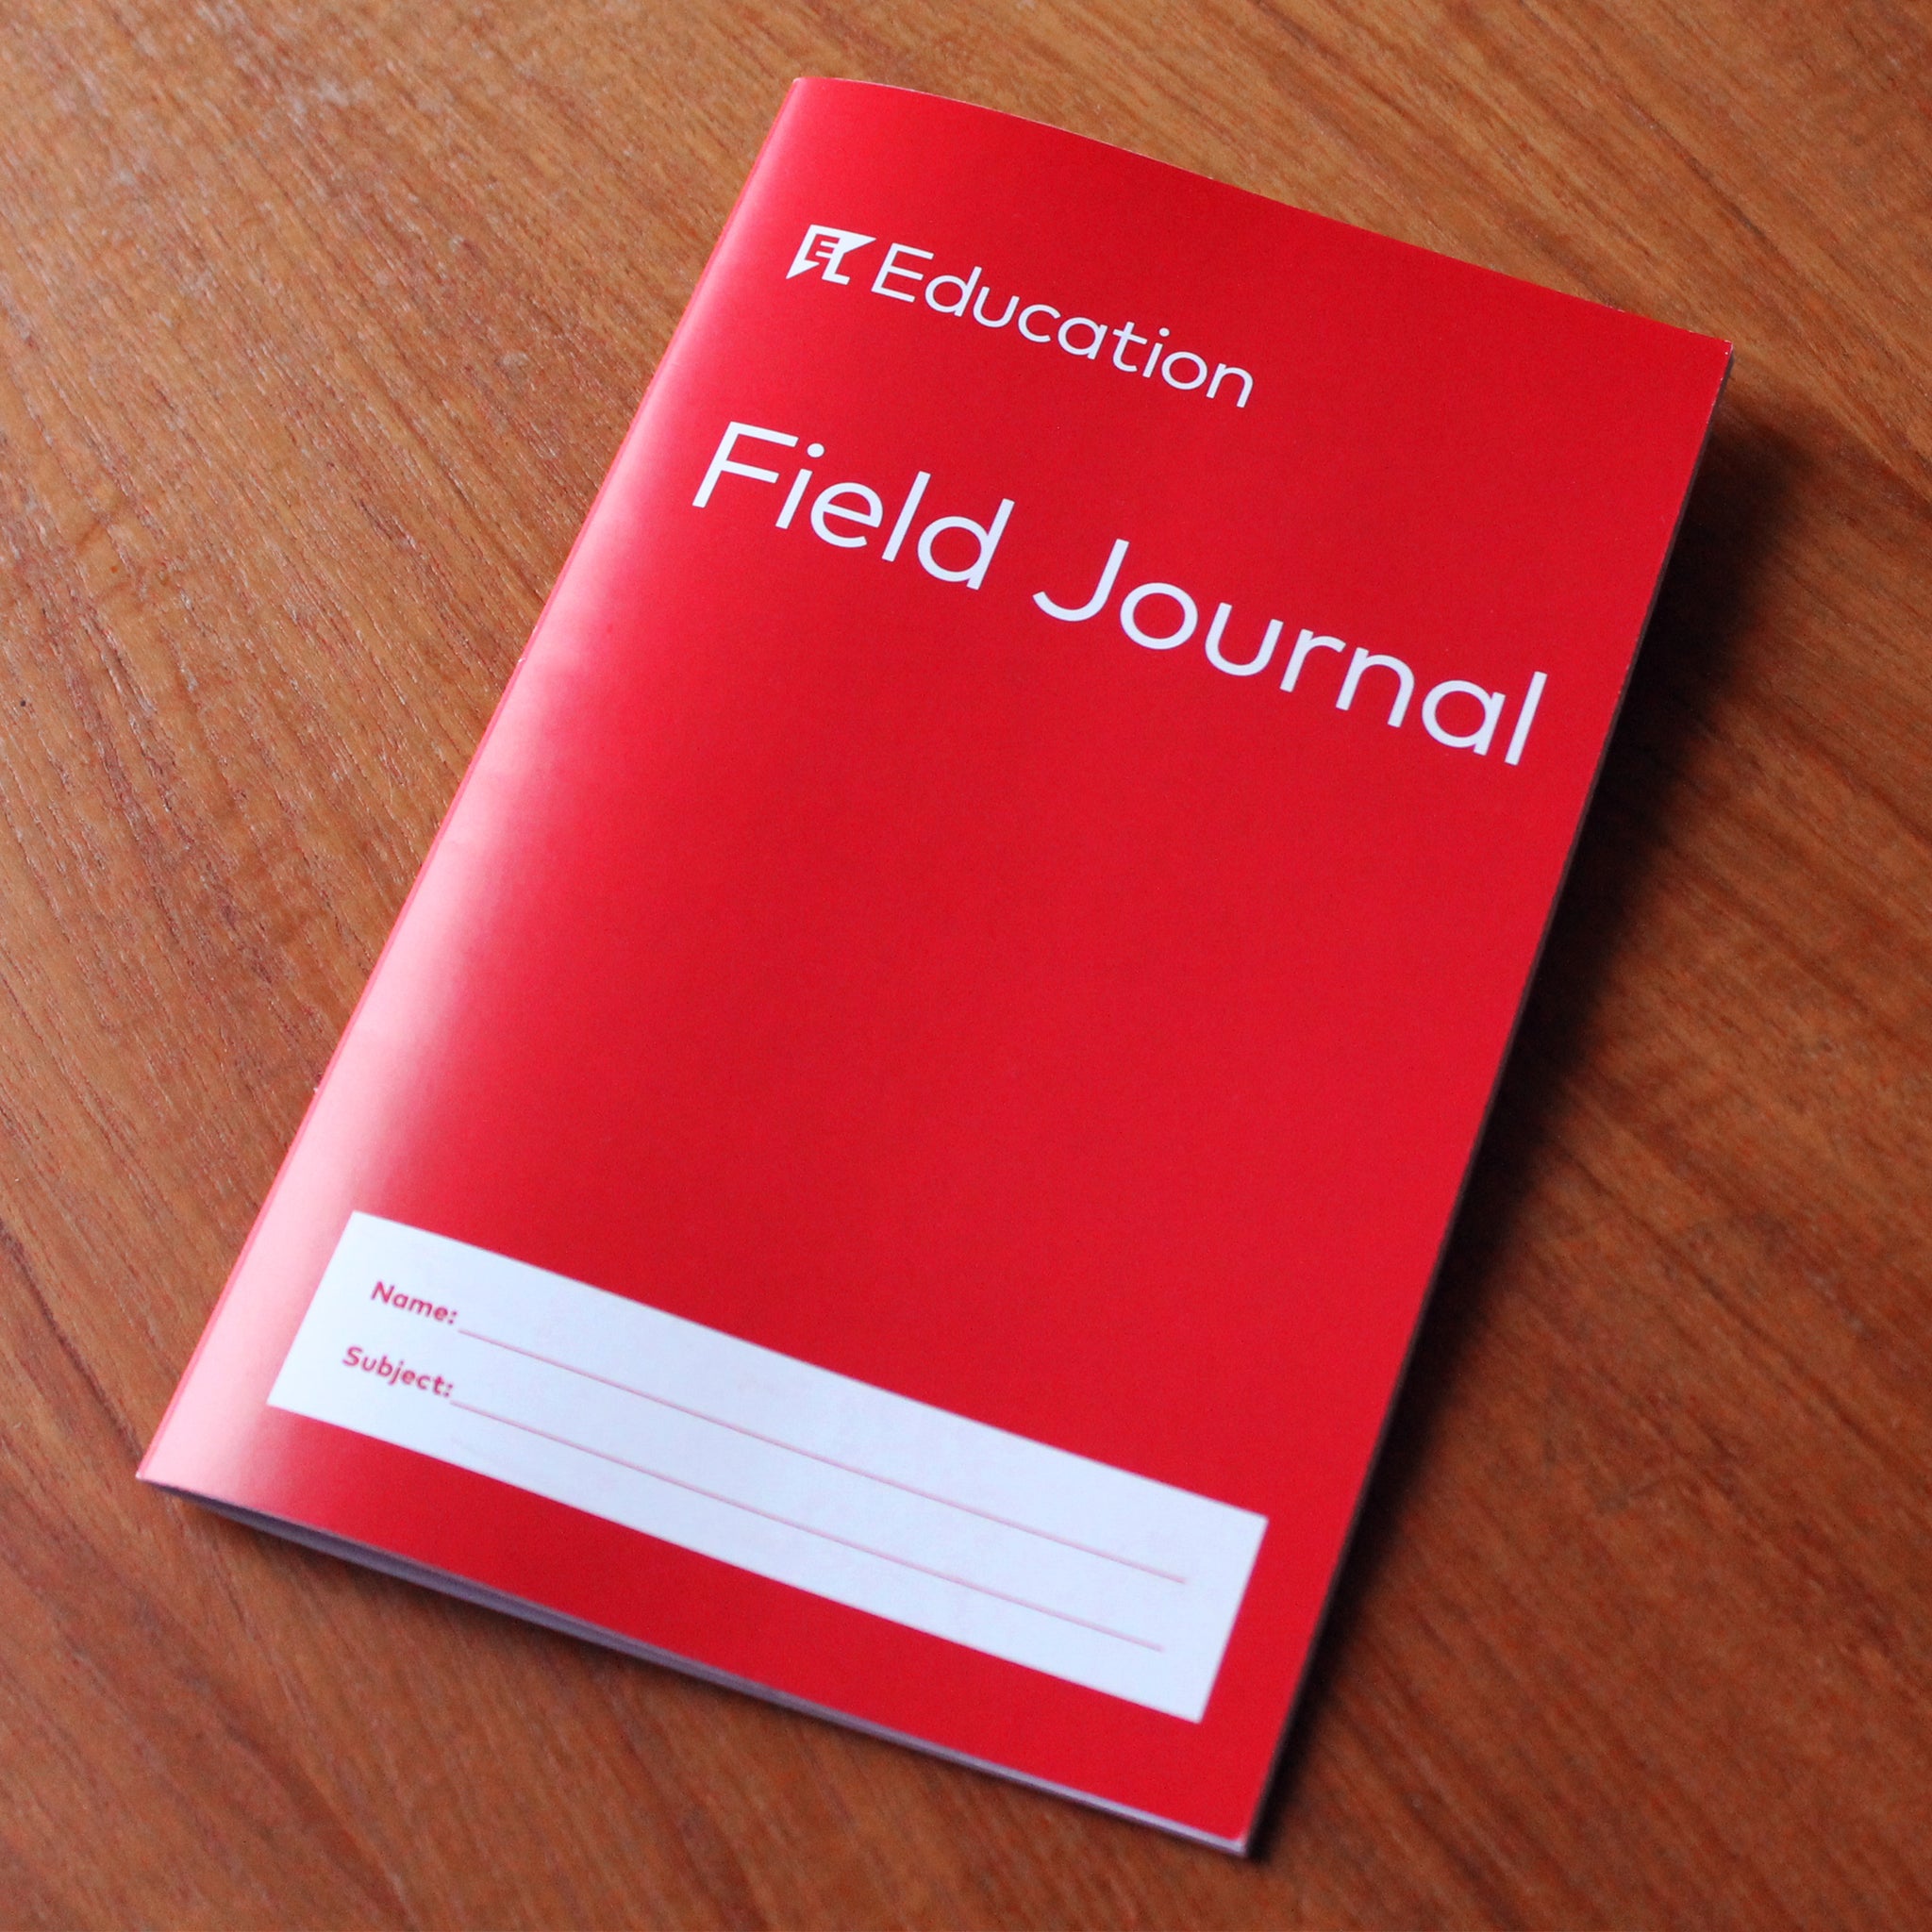 Field Journal